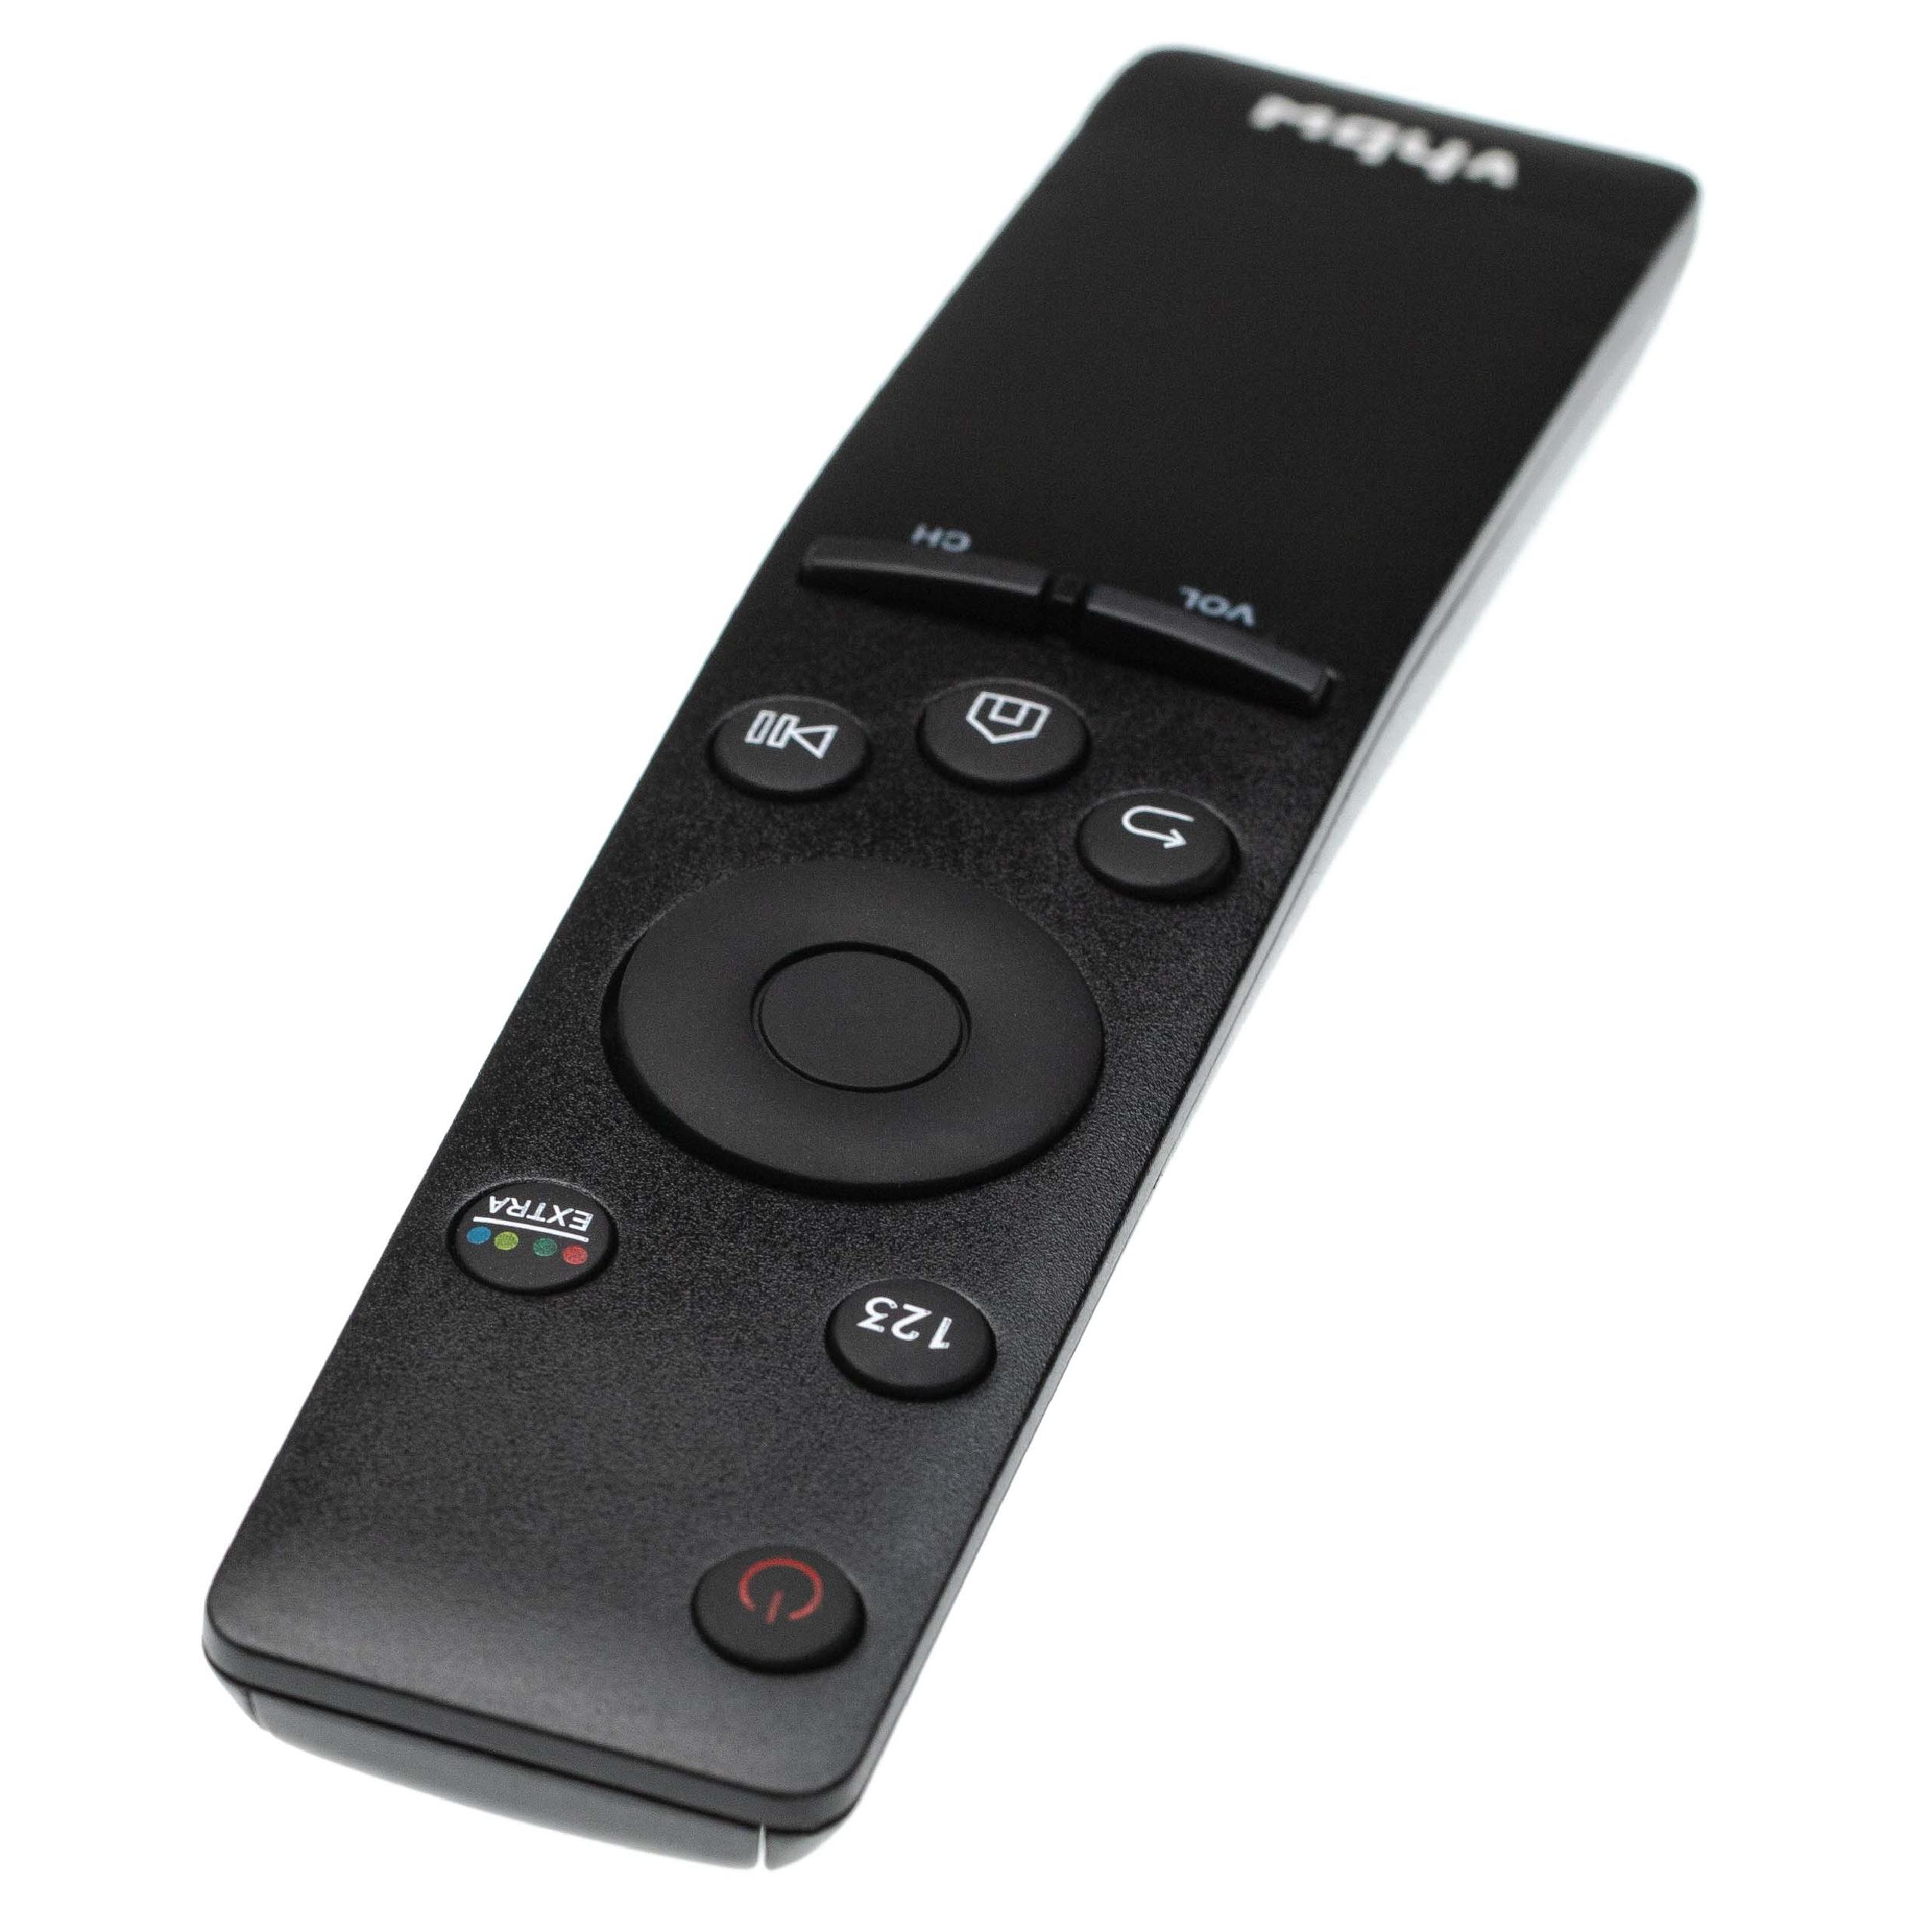 Remote Control replaces Samsung BN59-01259E, BN59-01259D, BN59-01260A, BN59-01259B, BN59-01266A for Samsung TV